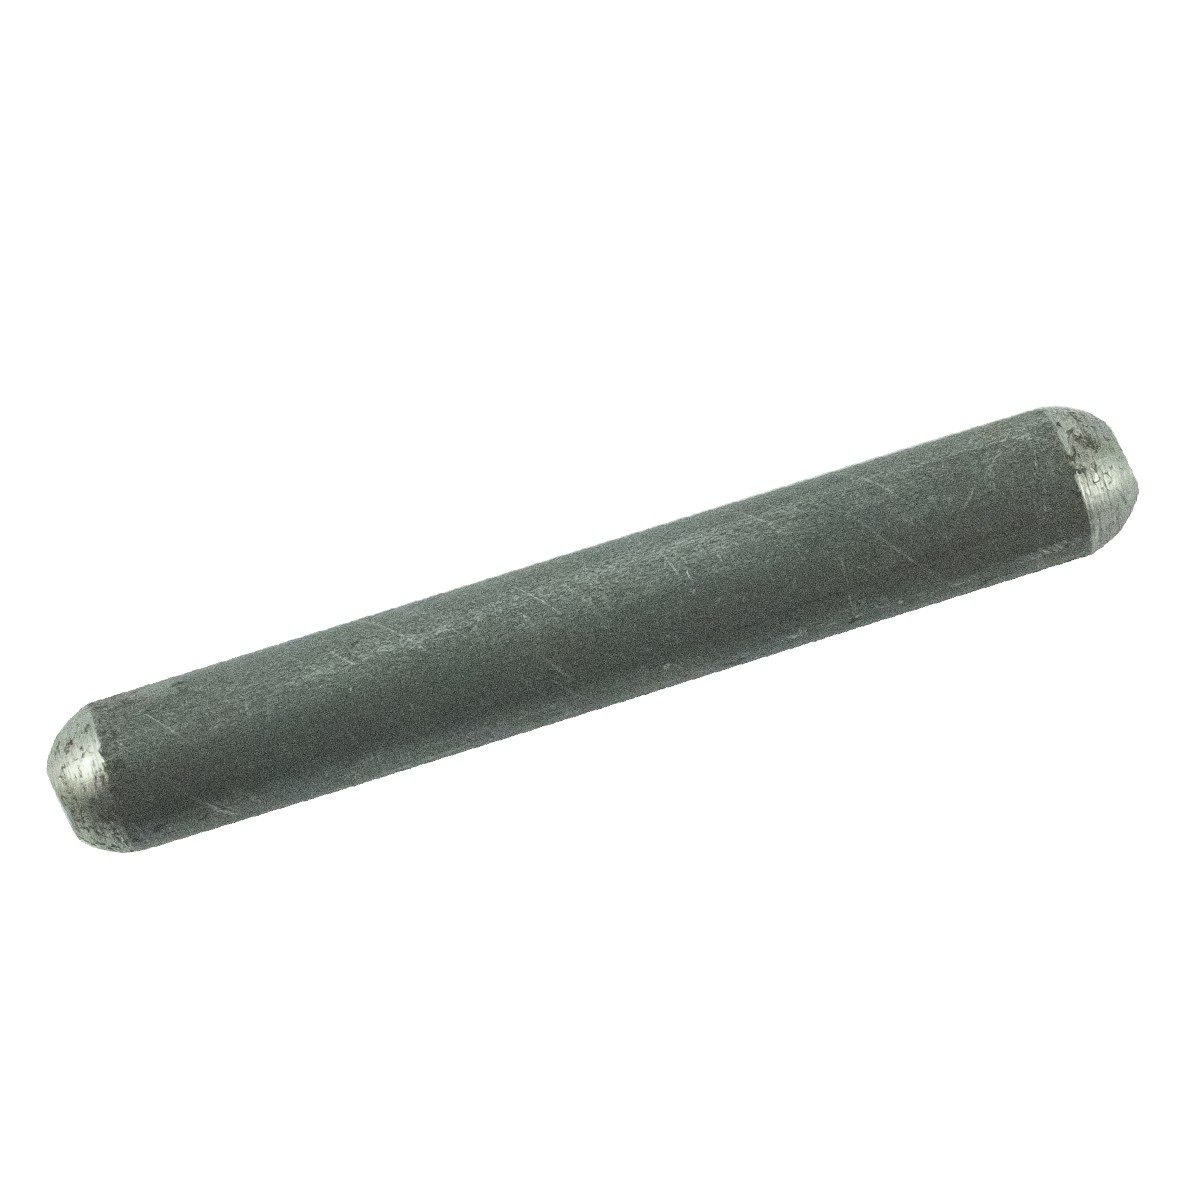 Wedge, locking pin 5 x 36 mm / LS MT3.50 / LS MT3.60 / TRG292 / A1292284 / 40032422